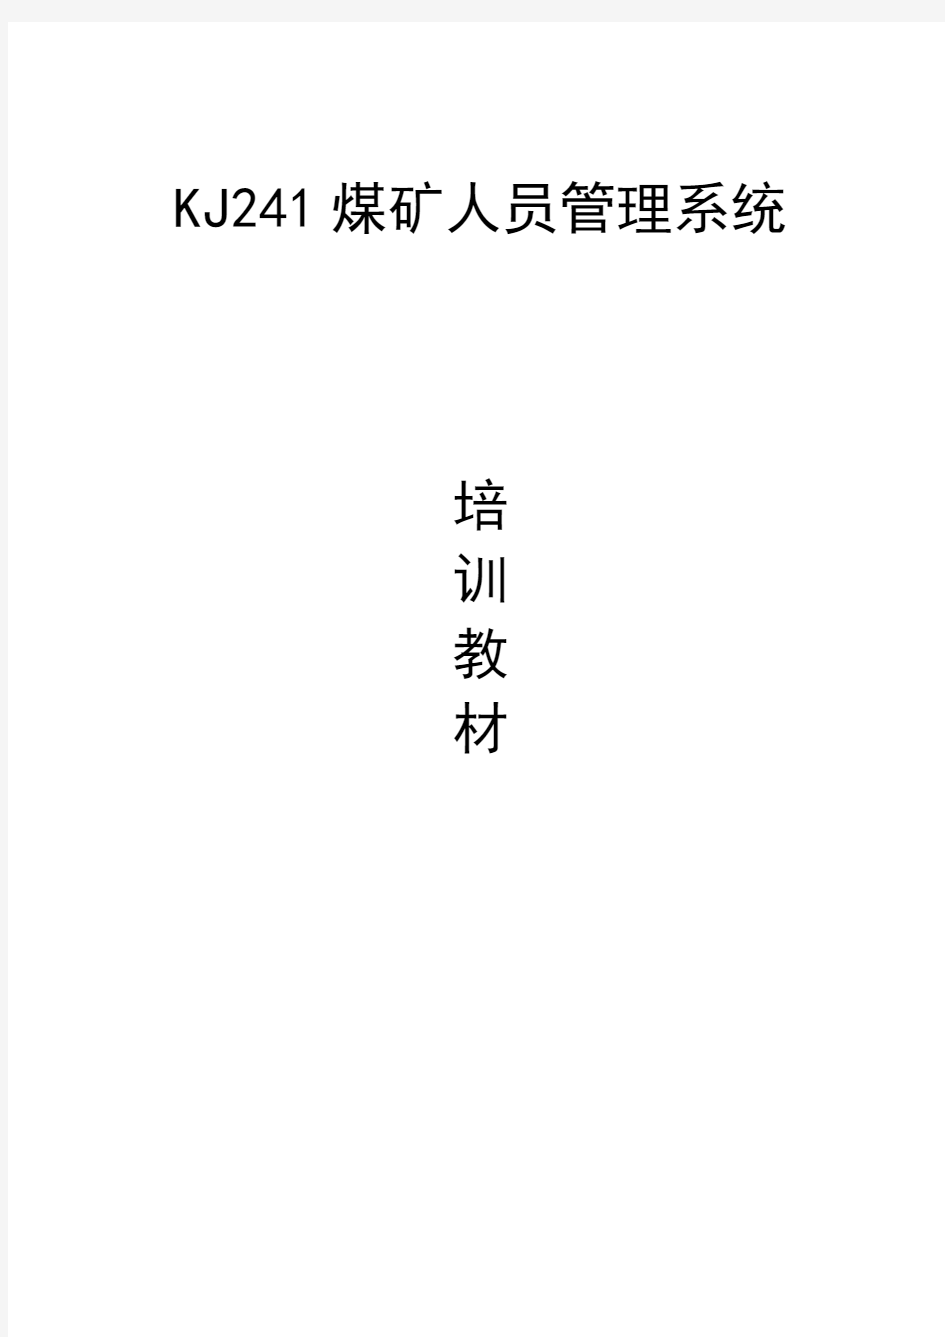 KJ241型人员管理系统培训教材